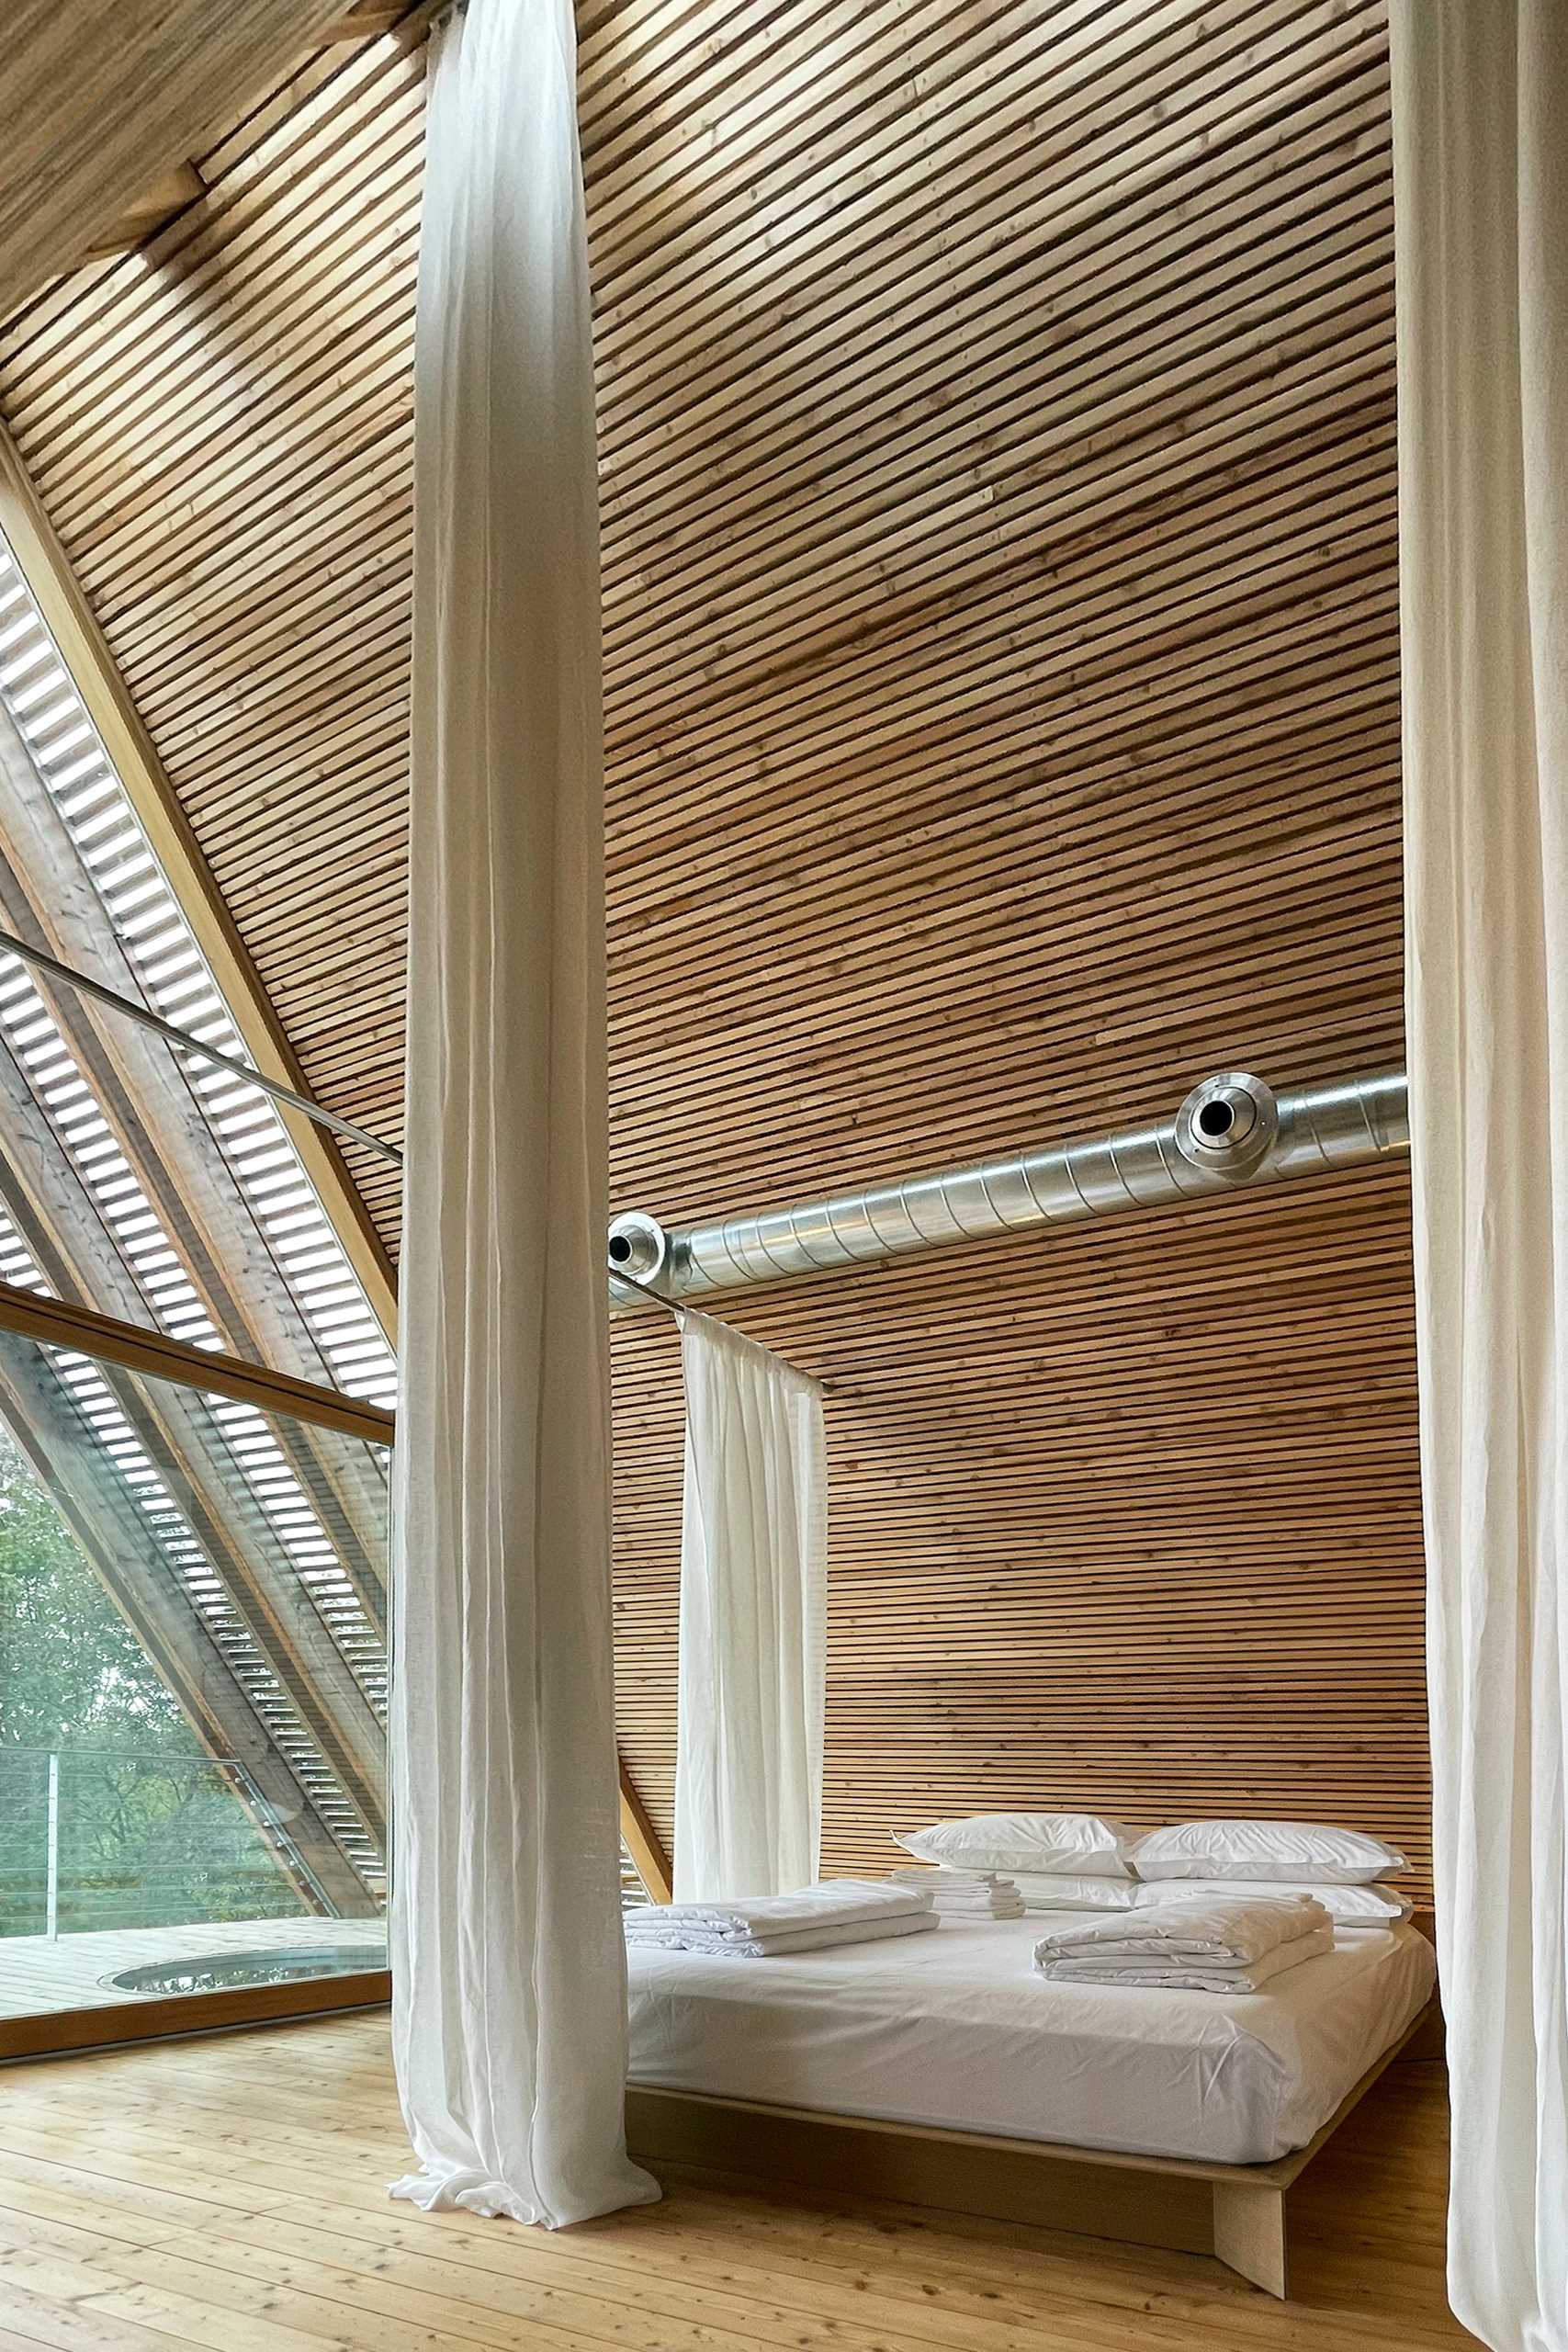 Rèm cửa dài treo từ trần nhà và tạo sự riêng tư cho khu vực ngủ nghỉ khi đóng cửa.